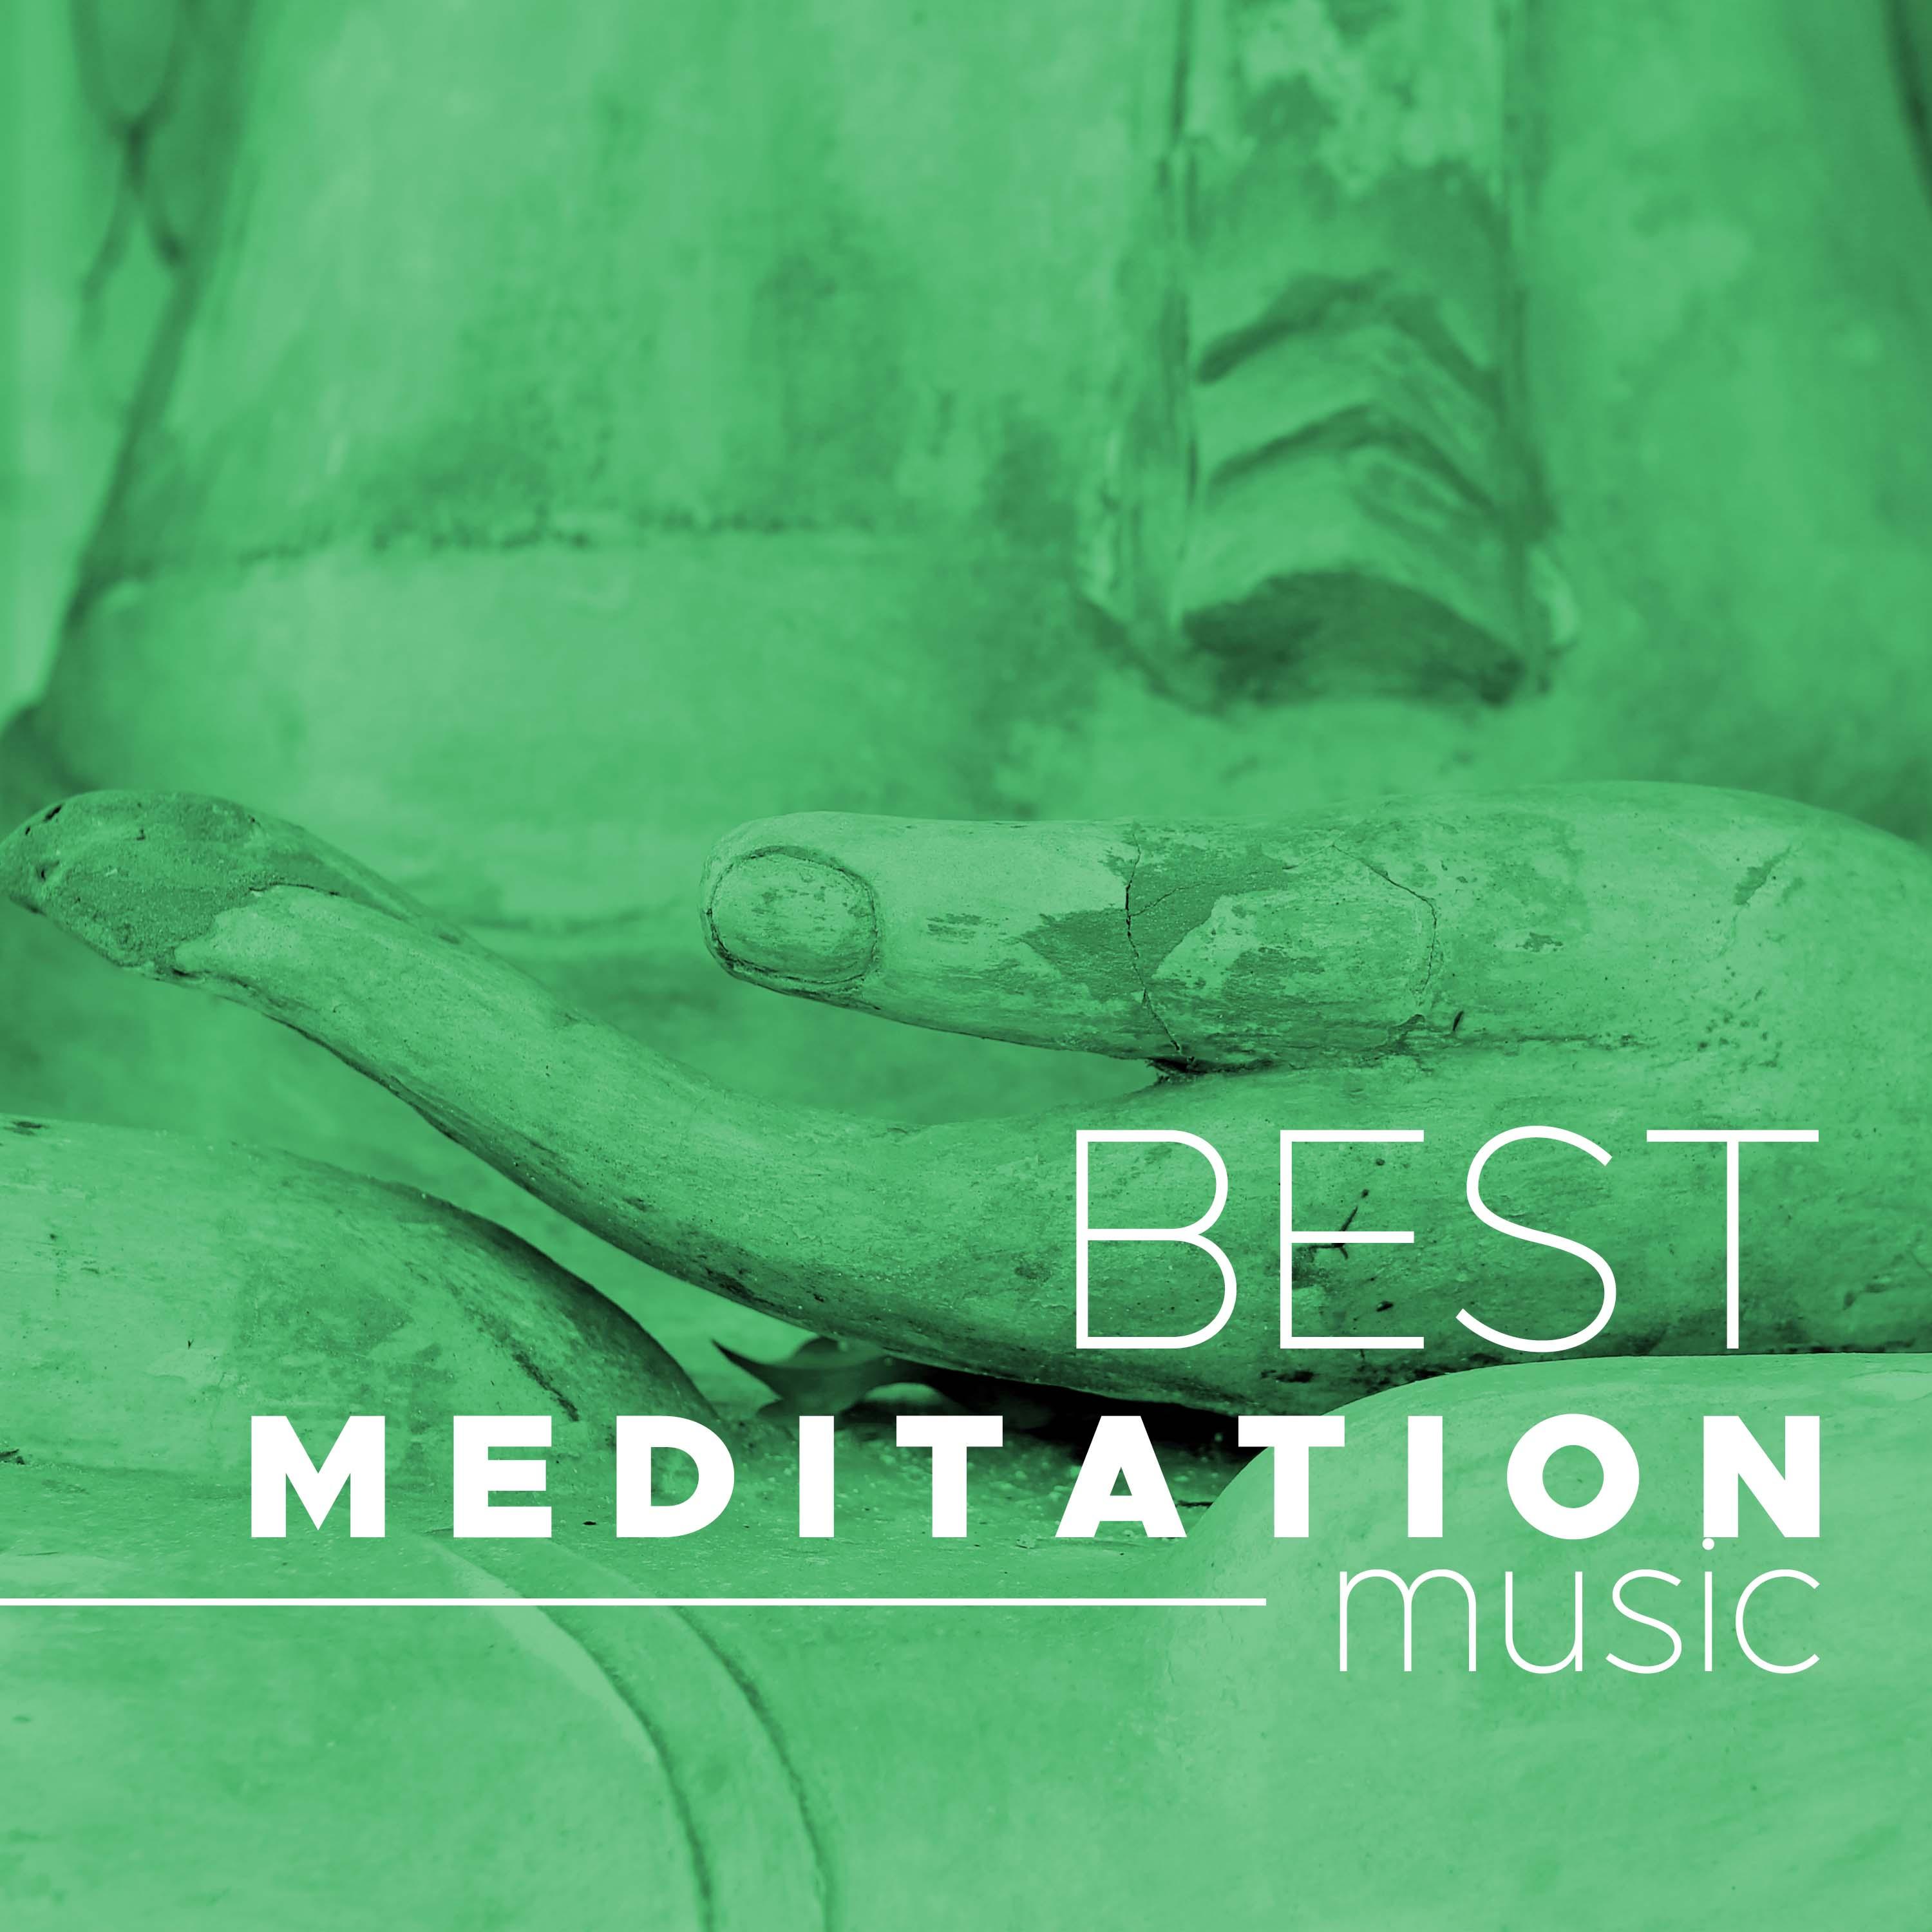 Art of Meditation - Meditation Music for Beginners